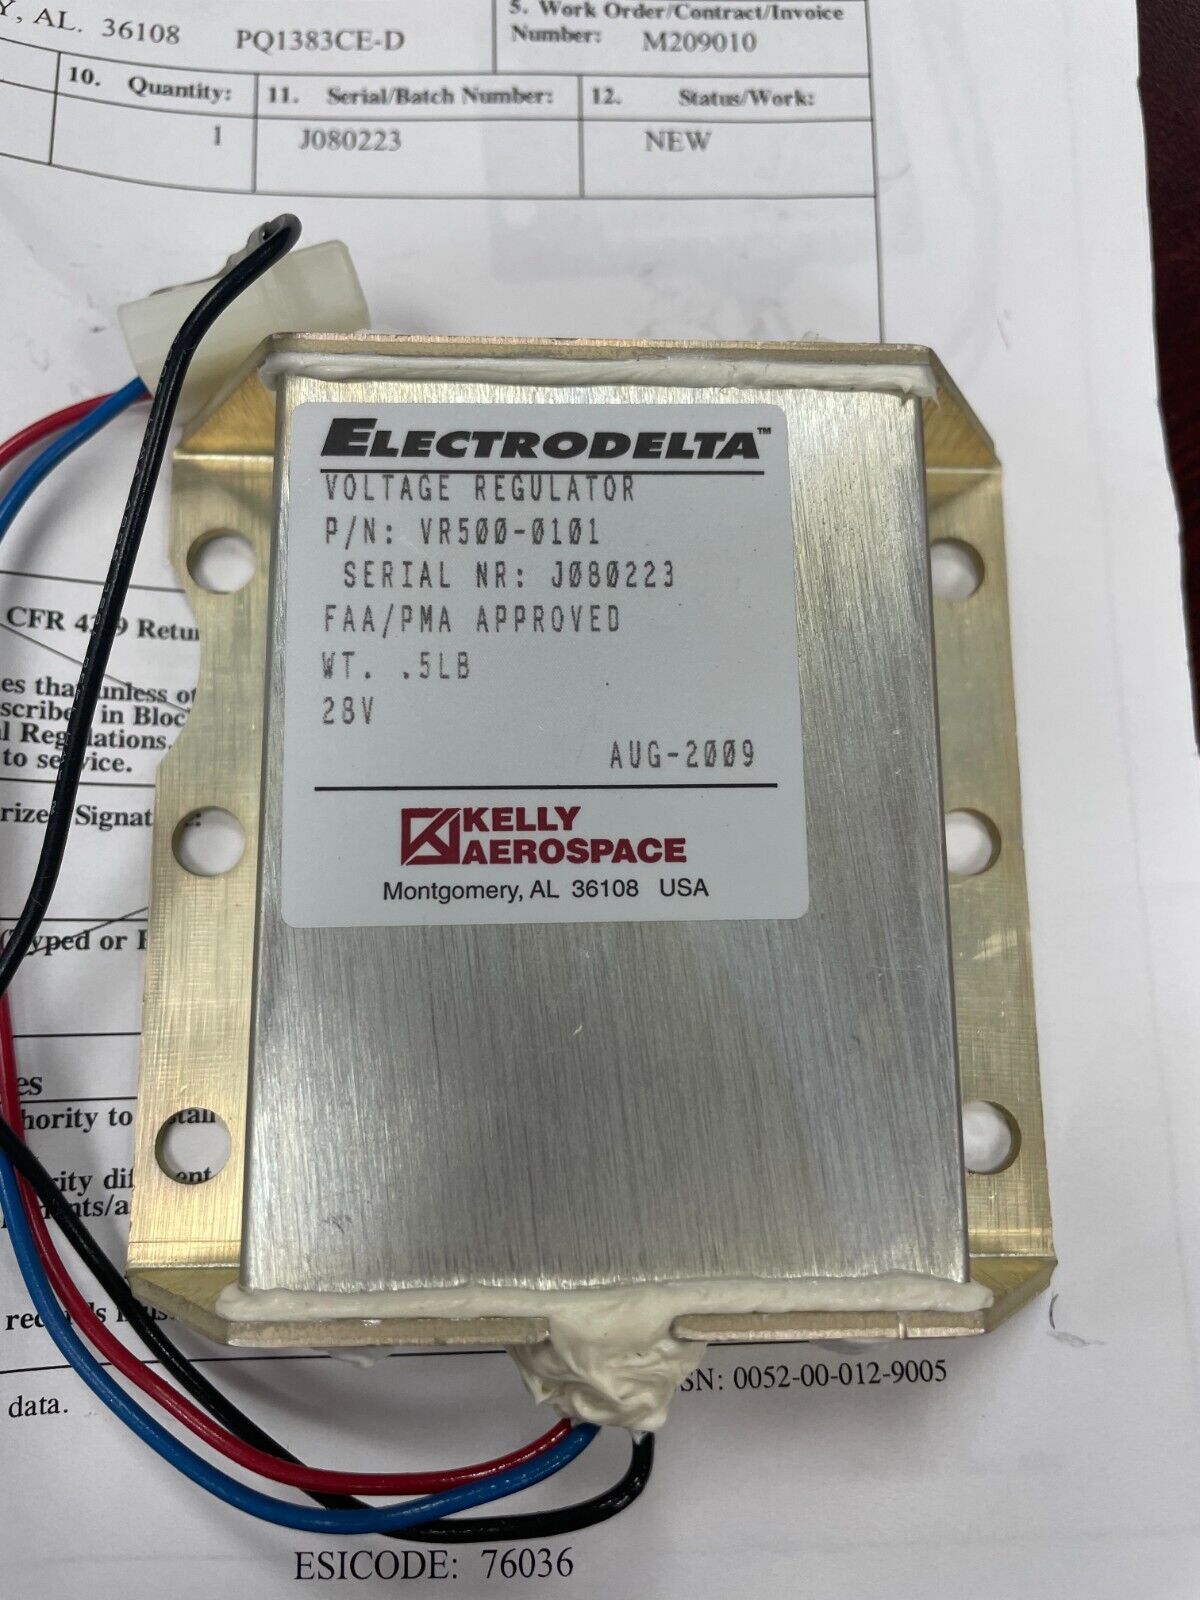 Electrodelta Voltage Regulator, P/N: VR500-0101